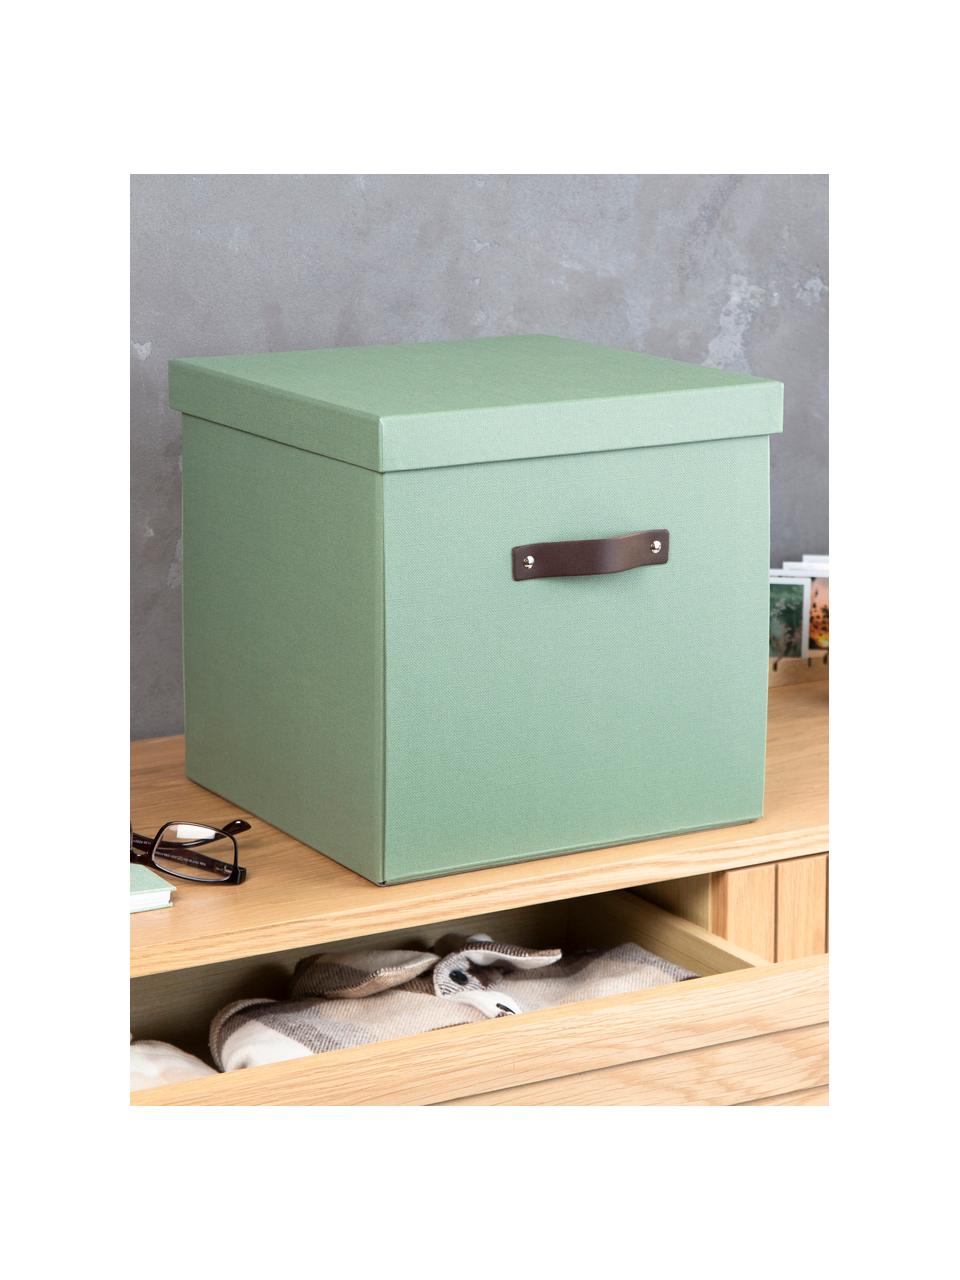 Pudełko do przechowywania Logan, Szałwiowy zielony, S 32 x G 32 cm